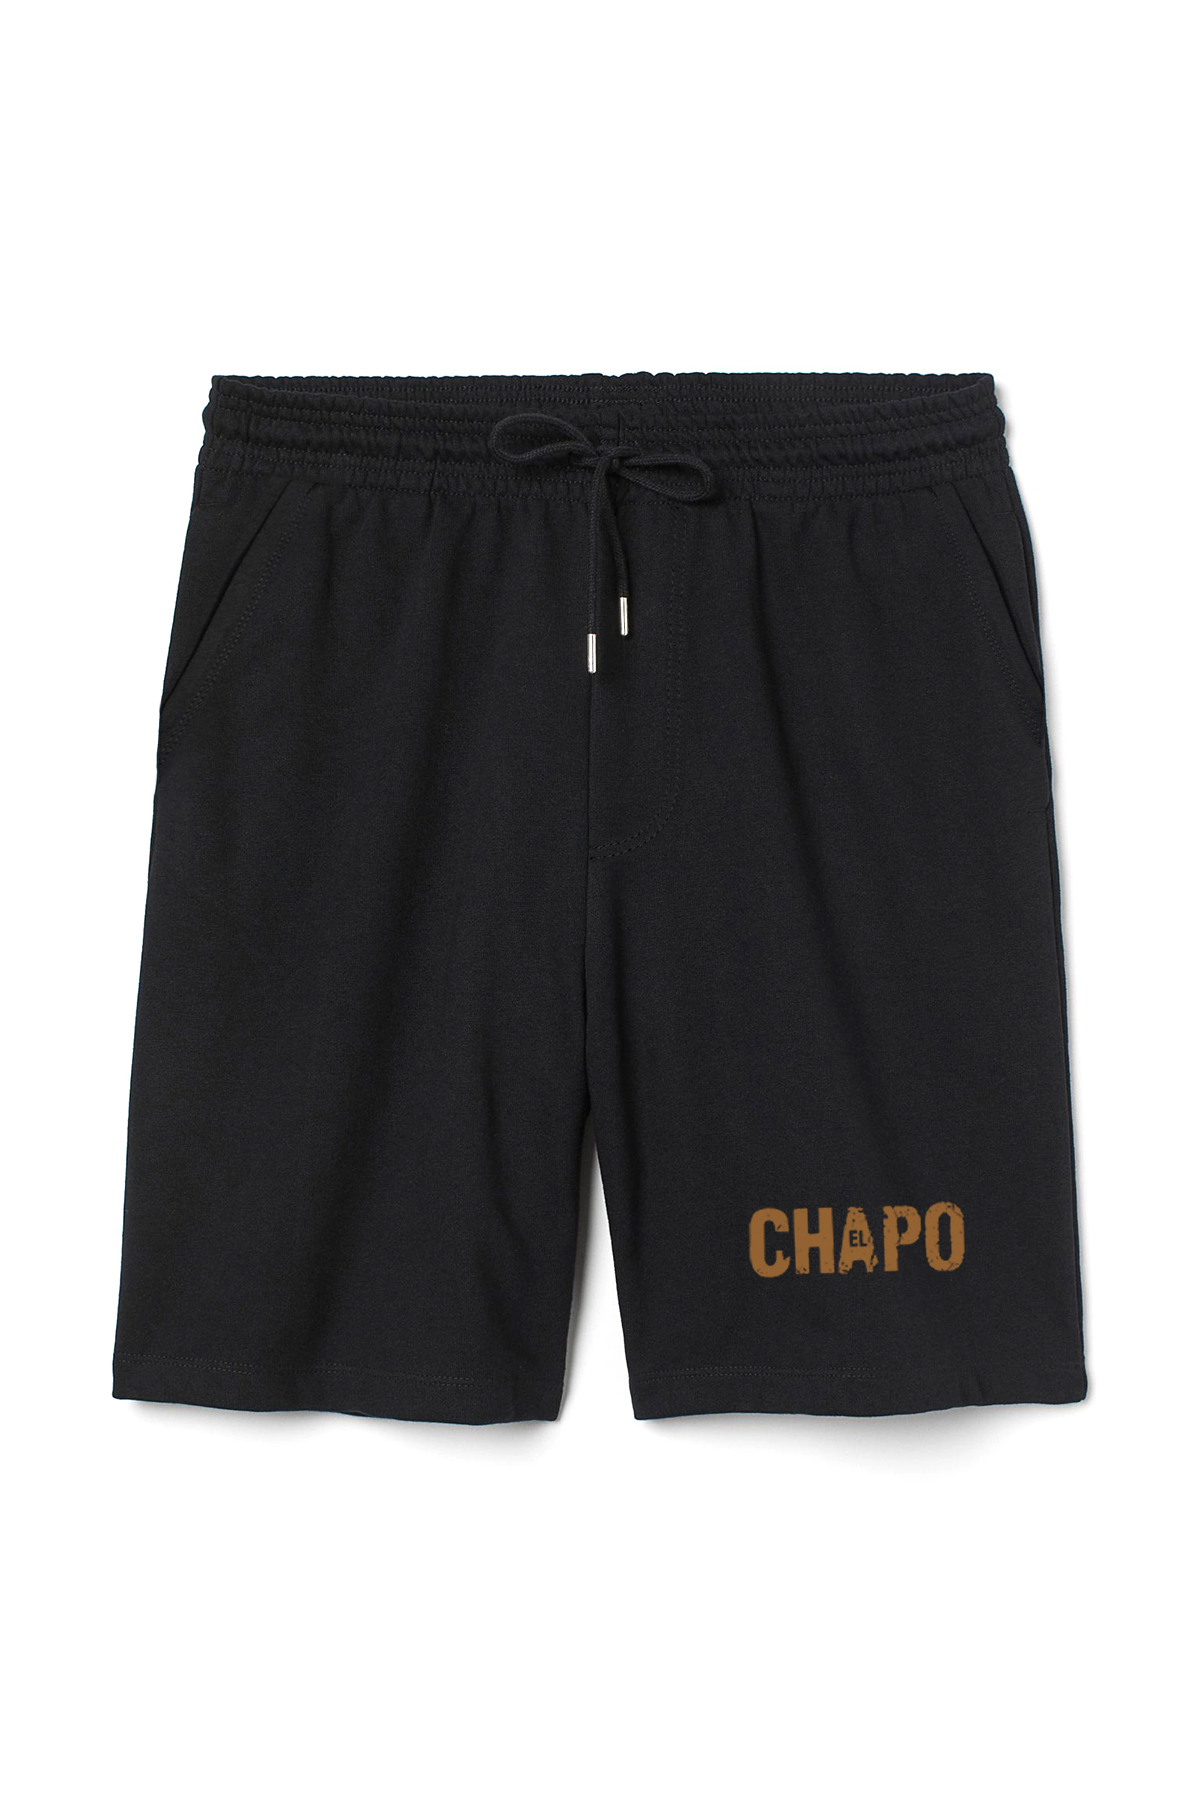 El Chapo Logo Erkek Siyah Şort